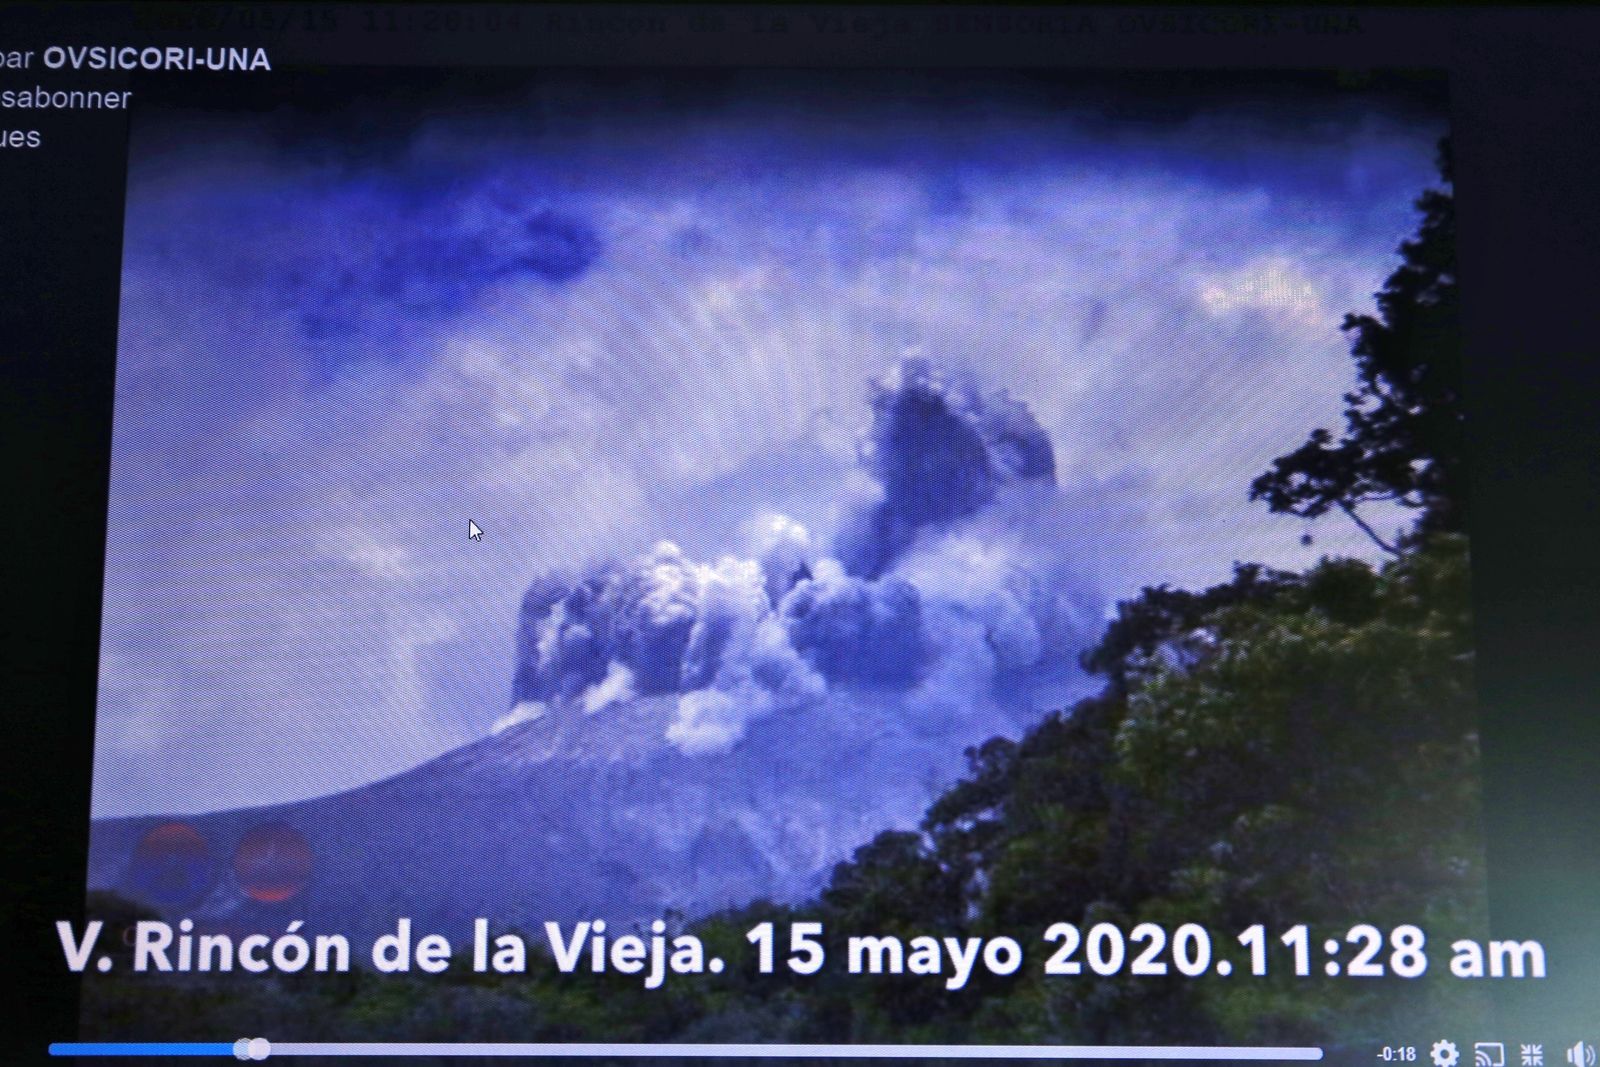 Rincon de La Vieja - hydrothermal eruption of 15.05.2020 / 11.28 am - Screan Ovsicori video